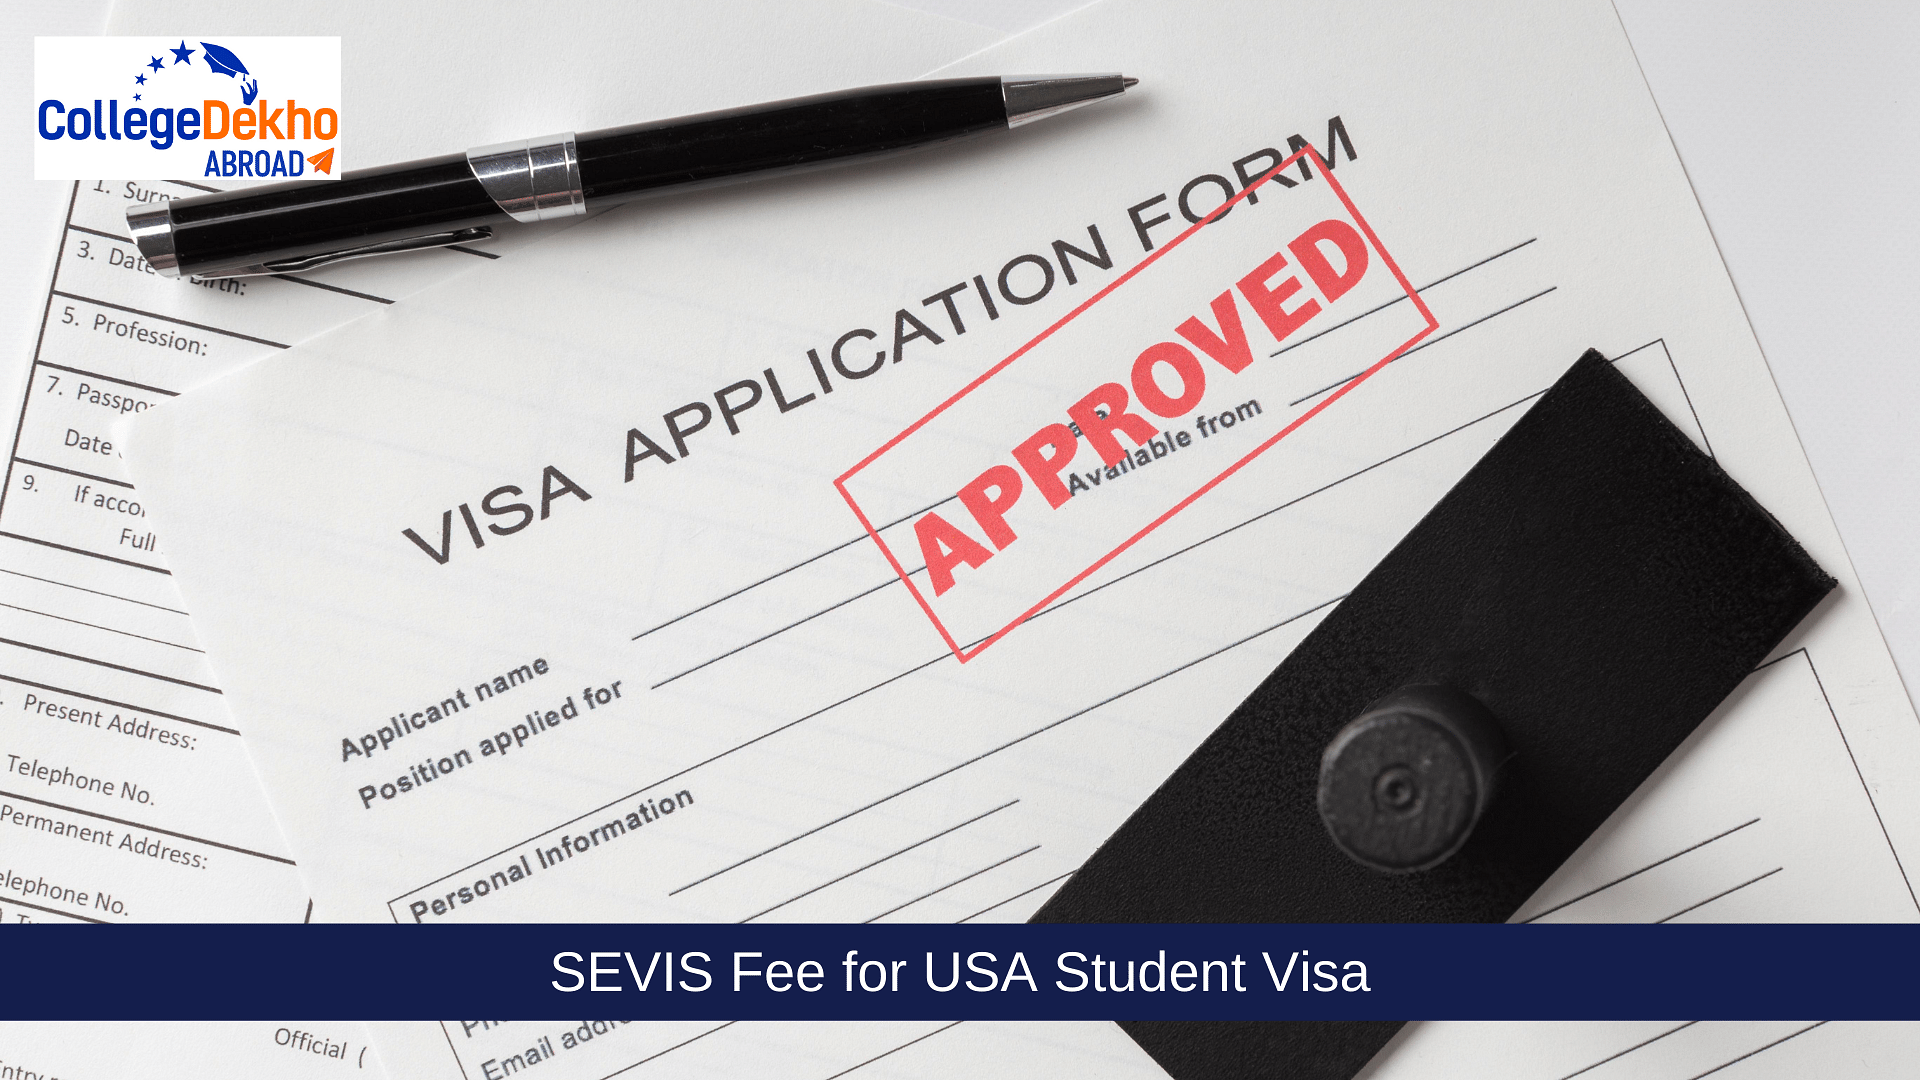 SEVIS Fee for USA Student Visa